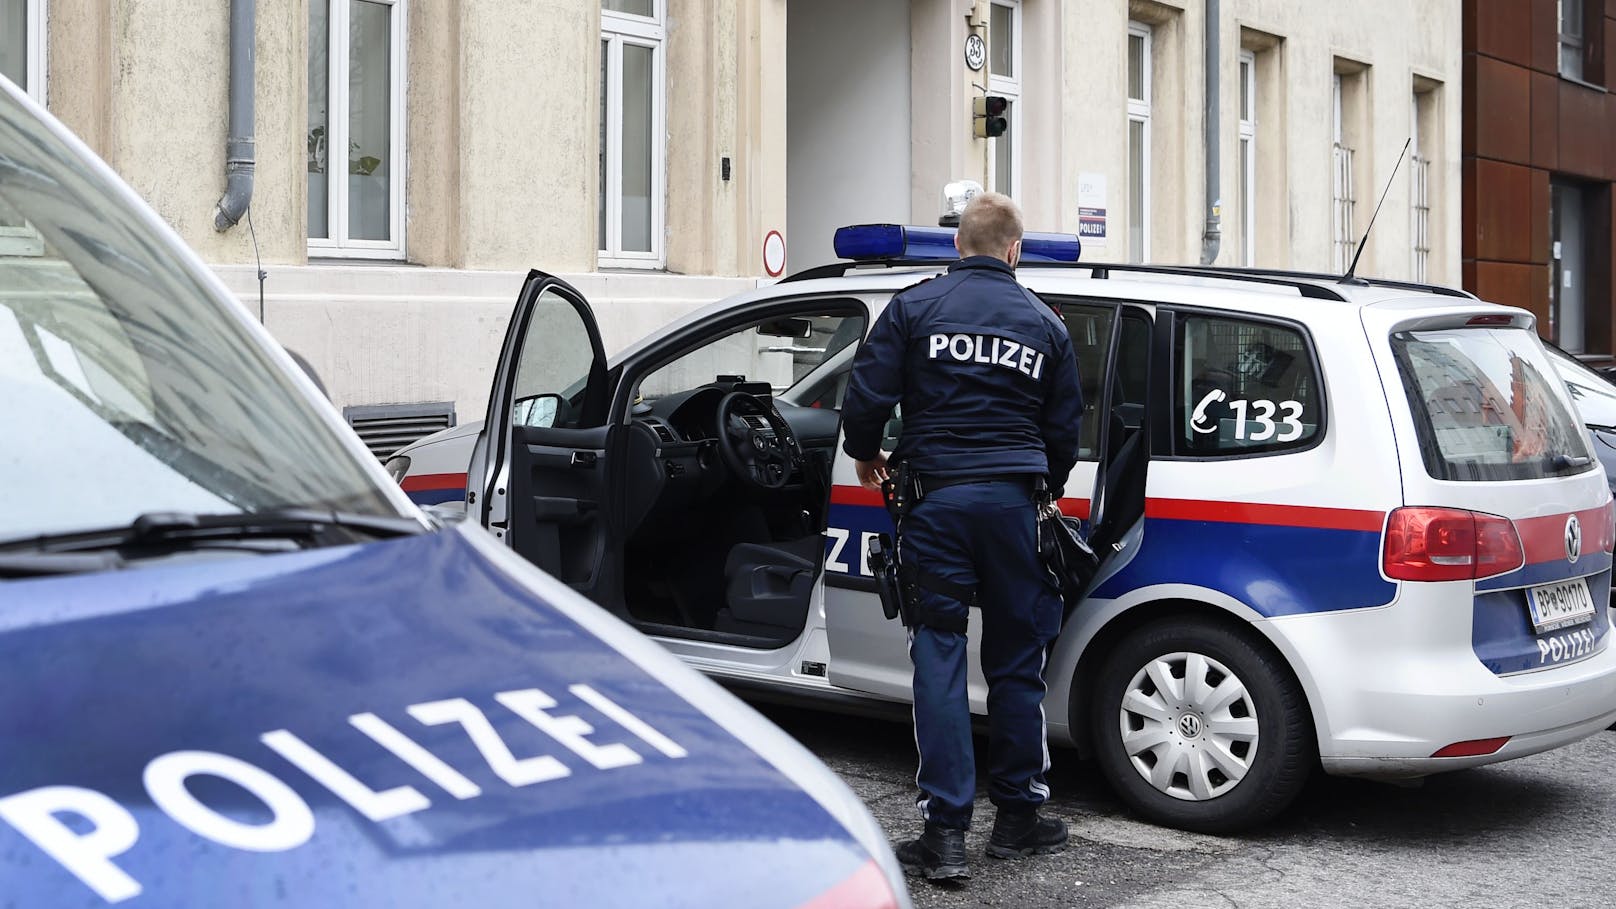 20-Jähriger verpasst Polizist in Wien Kopfstoß